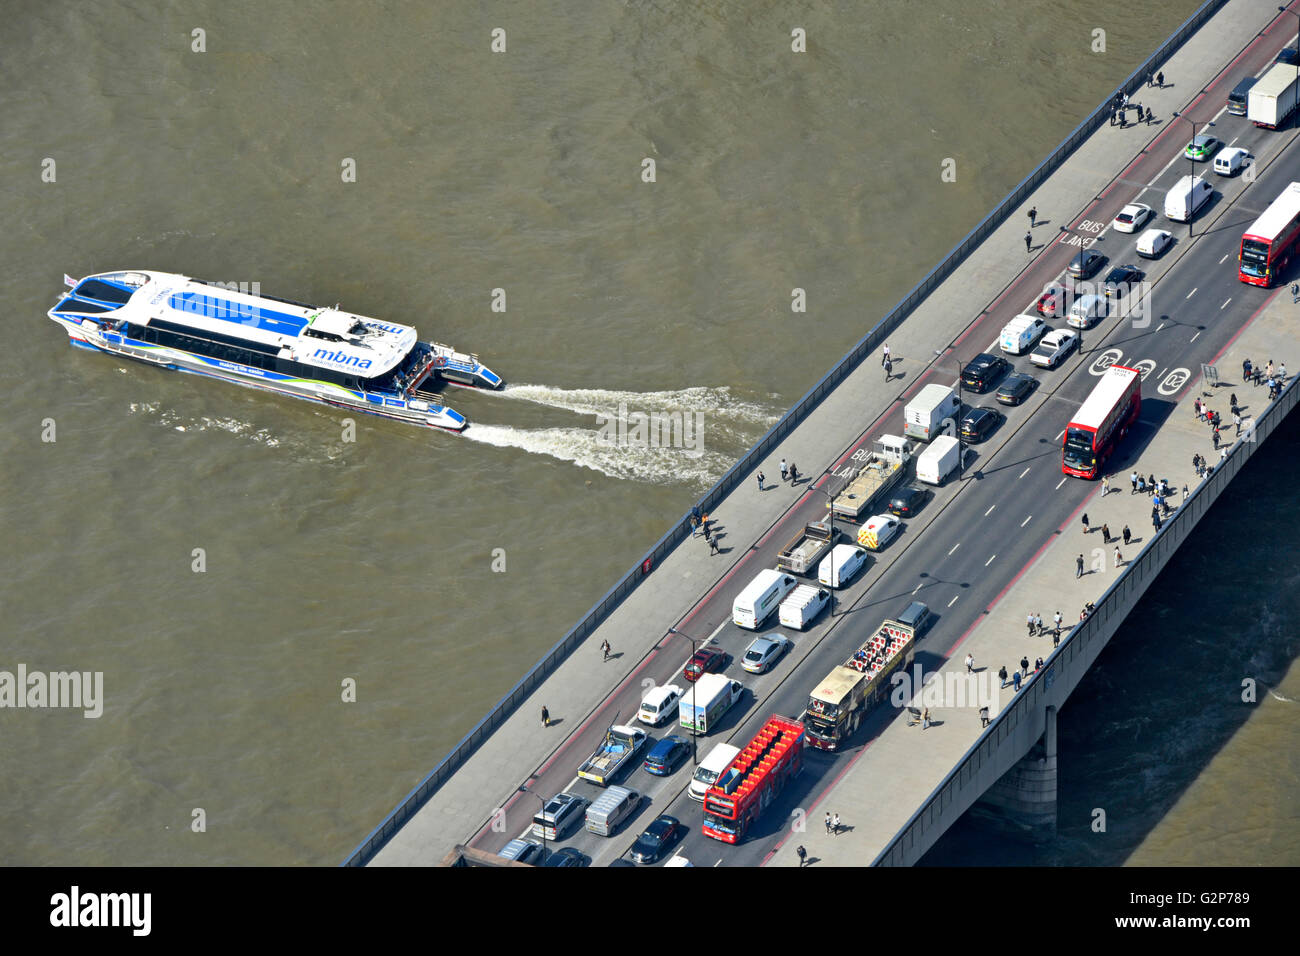 Vue aérienne de au-dessus de l'embouteillage et les piétons sur le pont de Londres Thames Clipper avec service de bus passant sous la rivière England UK Banque D'Images